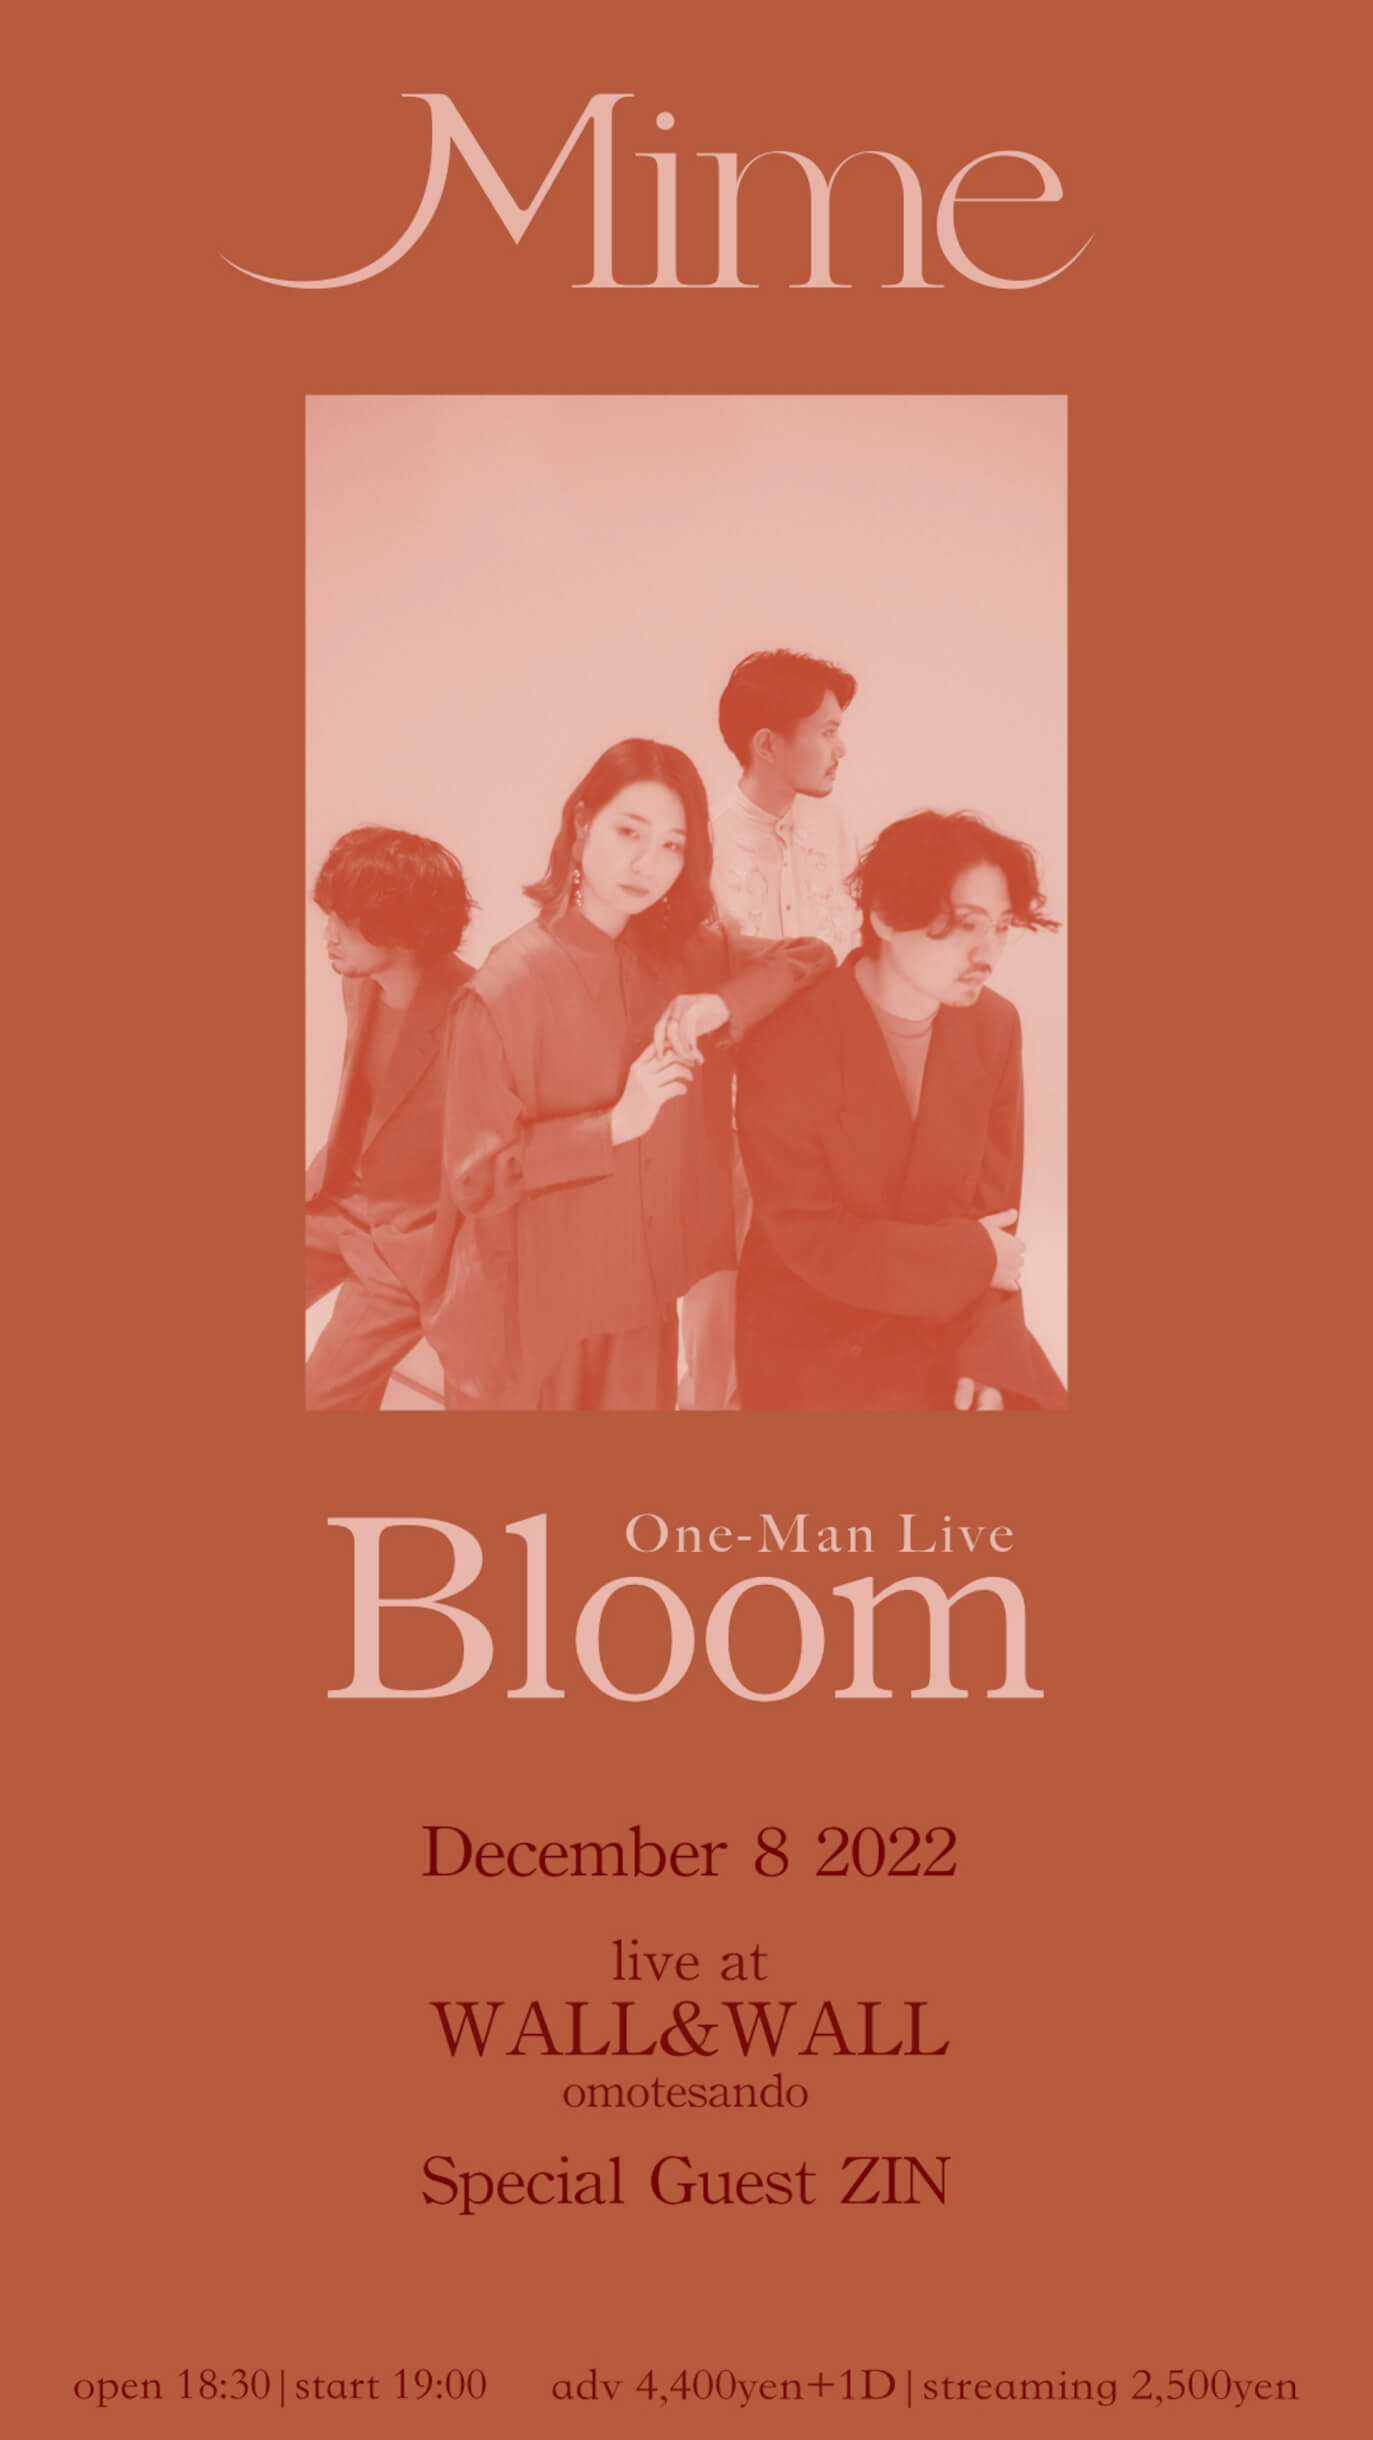 4人組ネオソウルバンド・Mime、ニューアルバム『Bloom』をリリース｜WALL＆WALLでのワンマンライブにはZIN（Soulflex）がゲスト出演 music221202-mime3